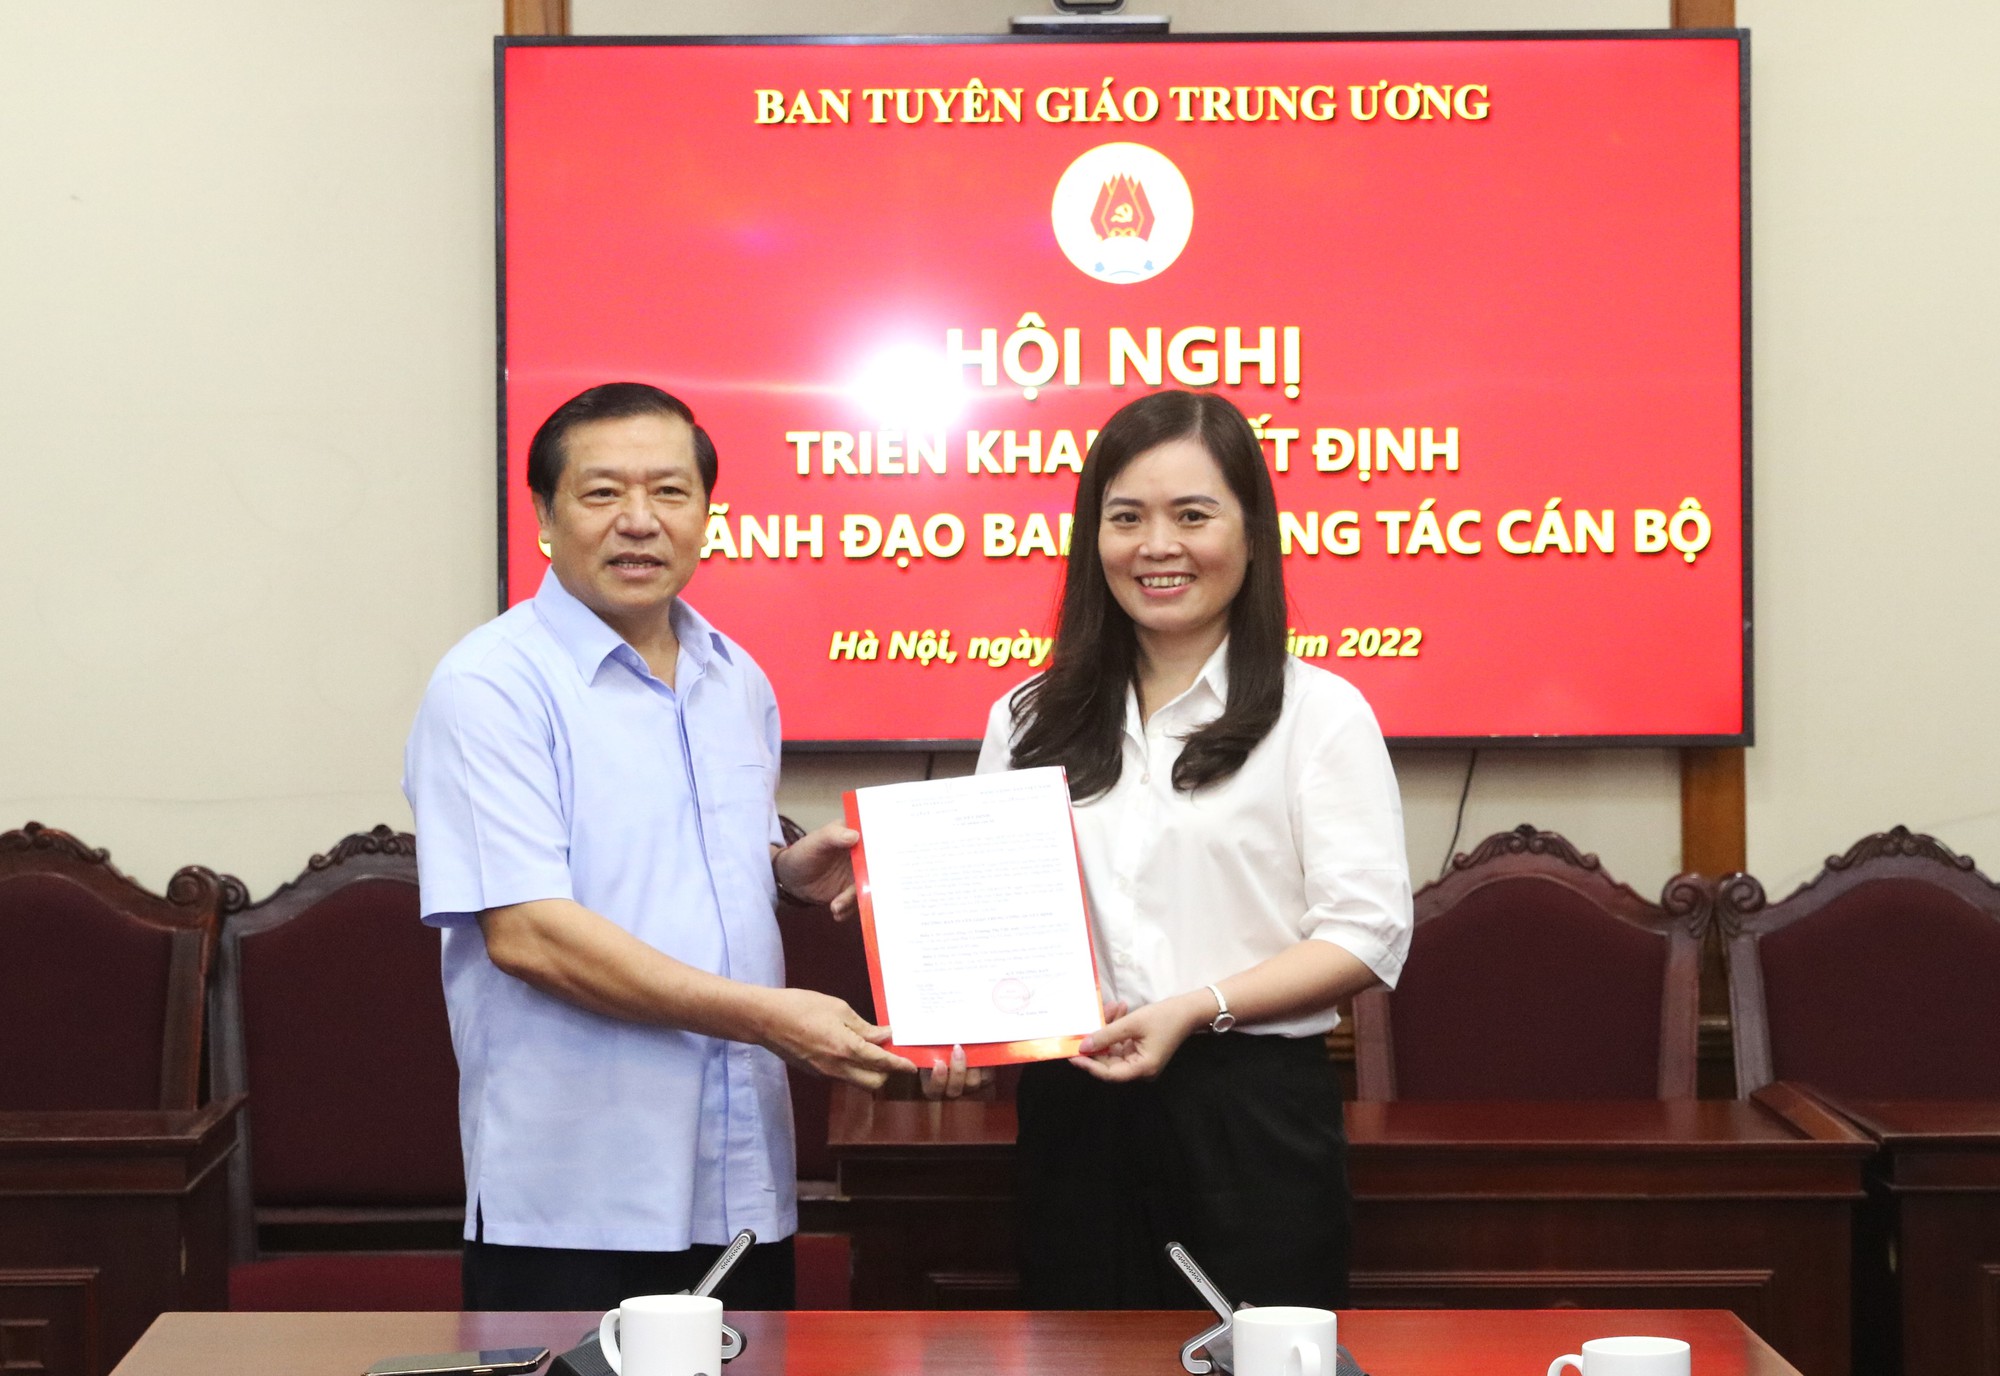 Bổ nhiệm ông Nguyễn Phú Trường làm Vụ trưởng của Ban Tuyên giáo Trung ương - Ảnh 2.